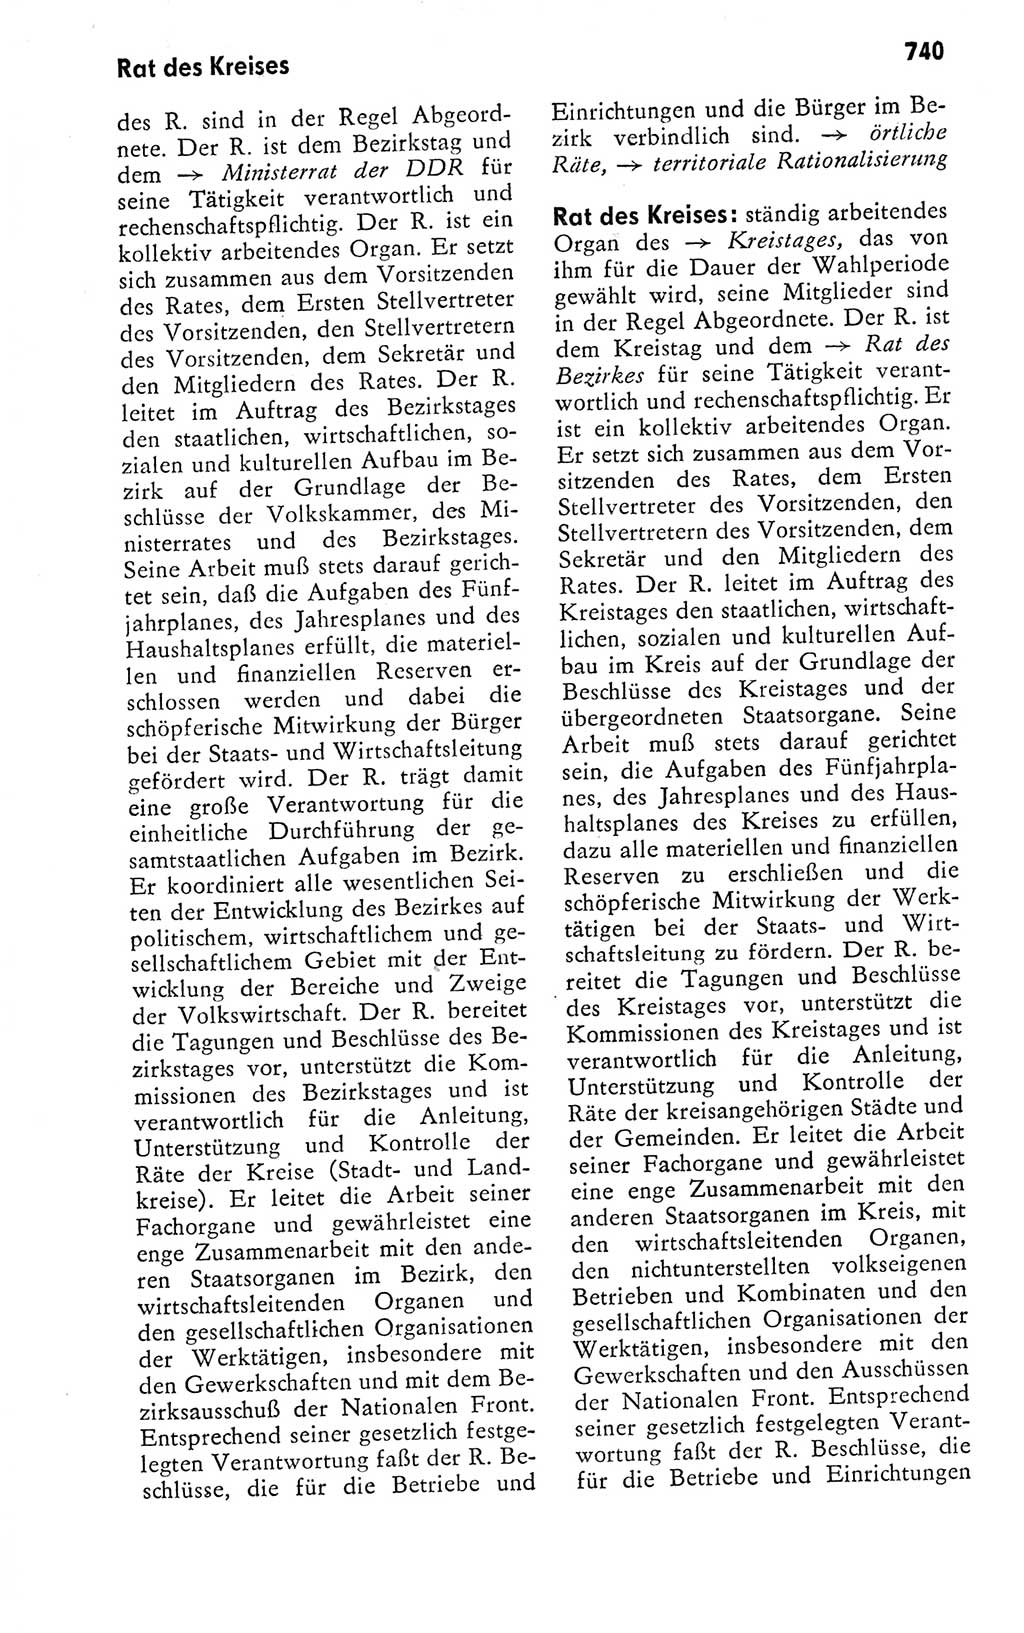 Kleines politisches Wörterbuch [Deutsche Demokratische Republik (DDR)] 1978, Seite 740 (Kl. pol. Wb. DDR 1978, S. 740)